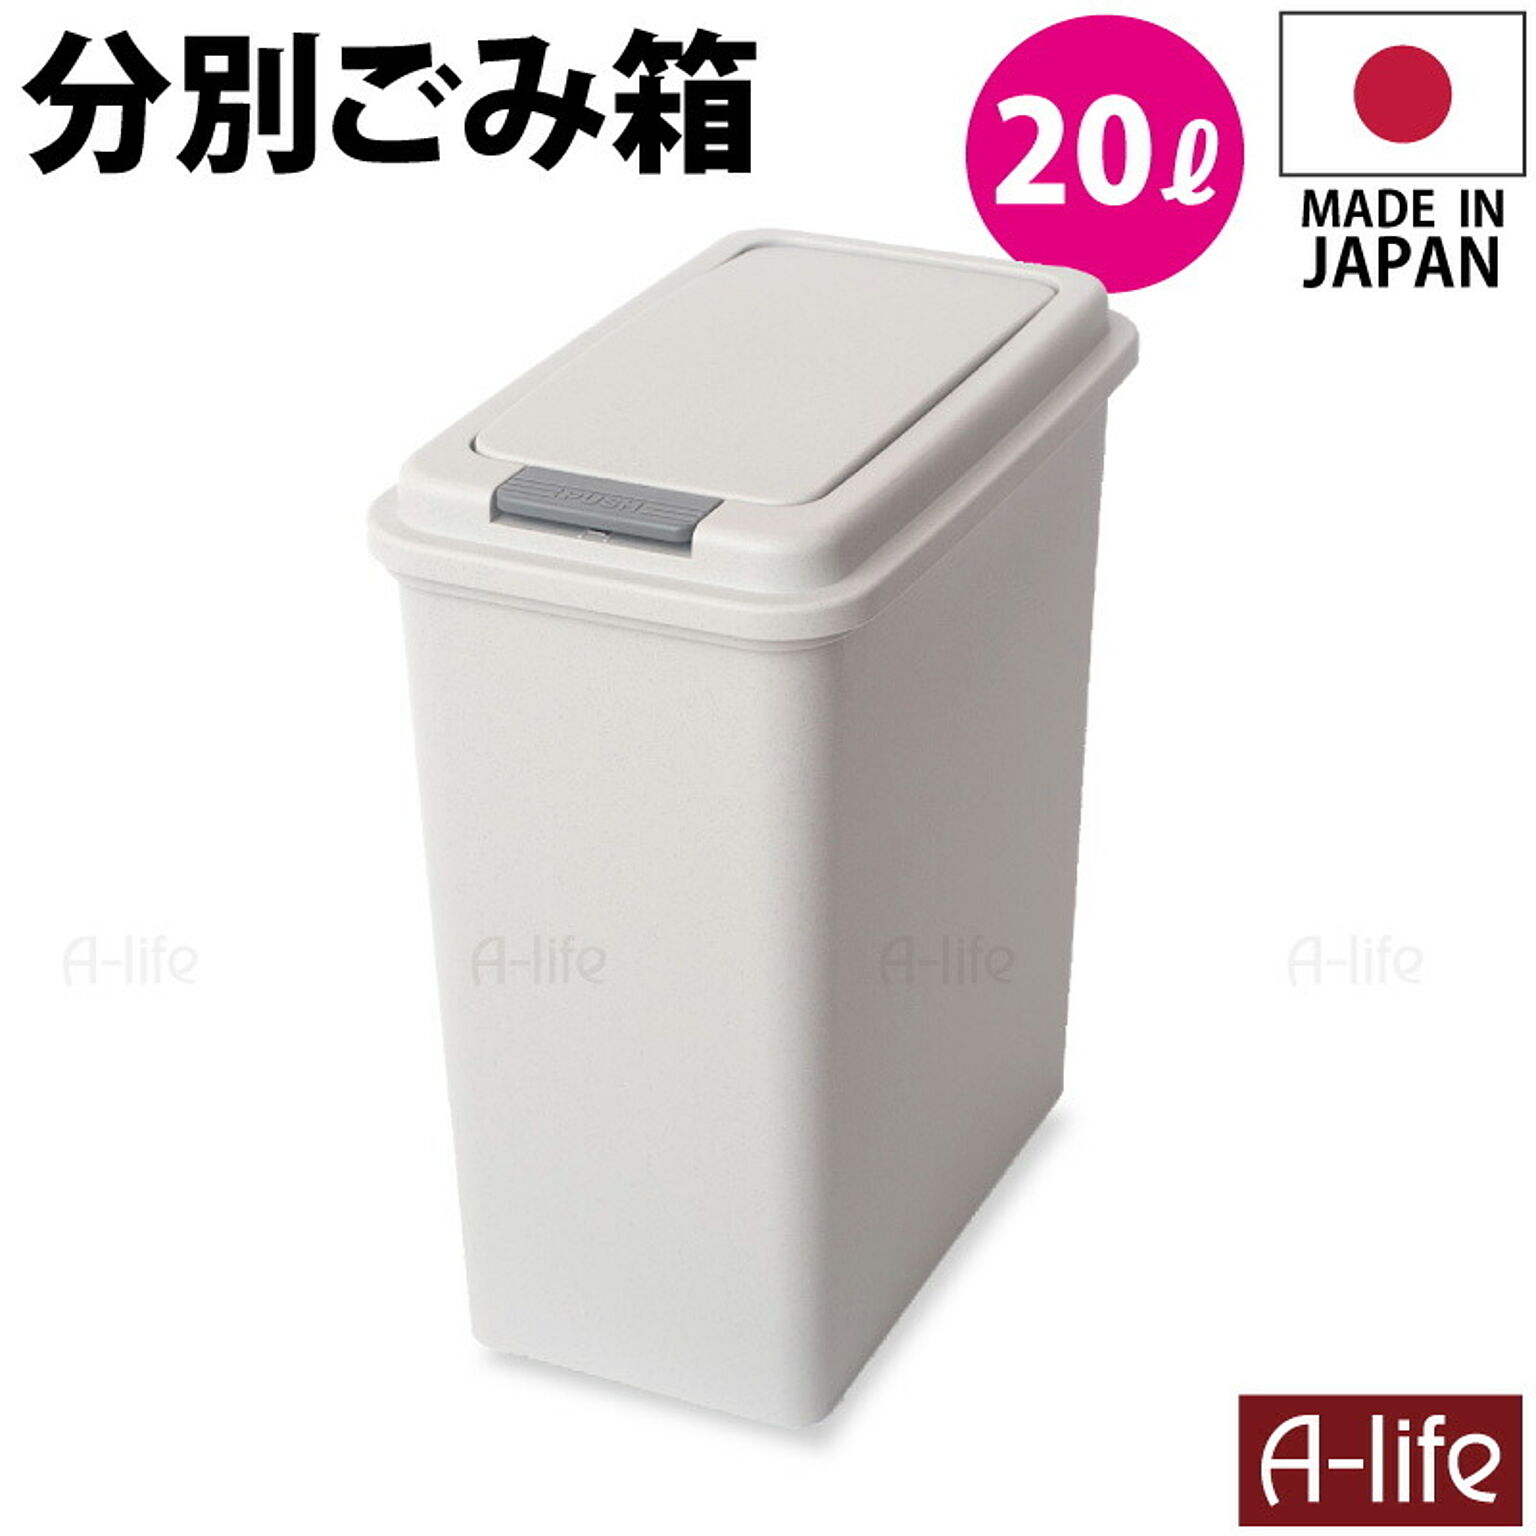 ゴミ箱 20L 1個 日本製 おしゃれ フタ付き キッチン